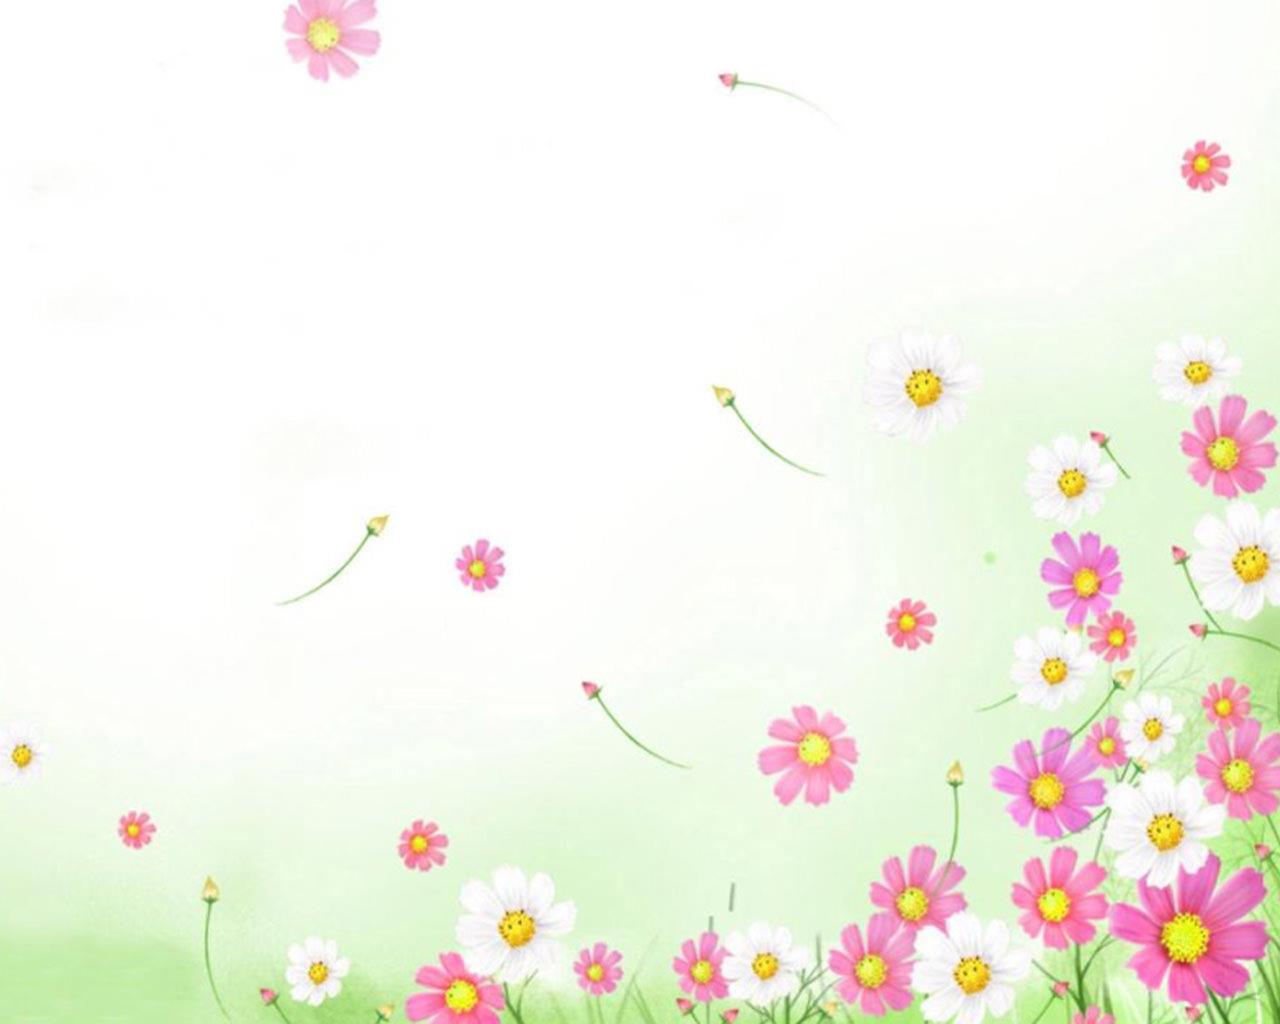 Wallpaper powerpoint tema bunga yang indah